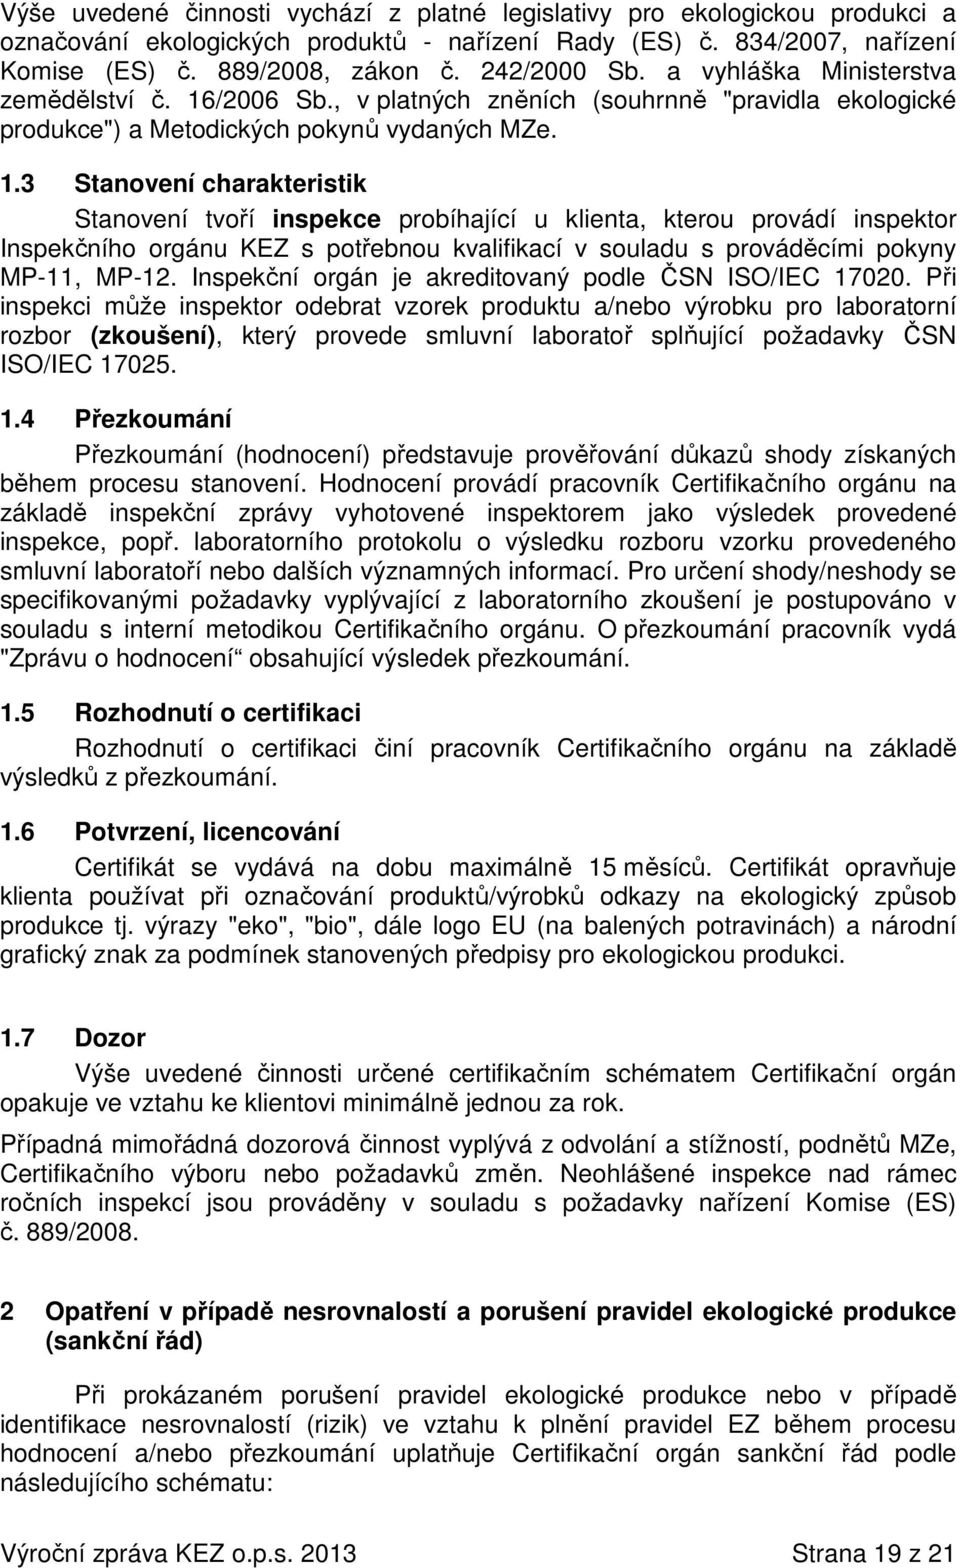 /2006 Sb., v platných zněních (souhrnně "pravidla ekologické produkce") a Metodických pokynů vydaných MZe. 1.